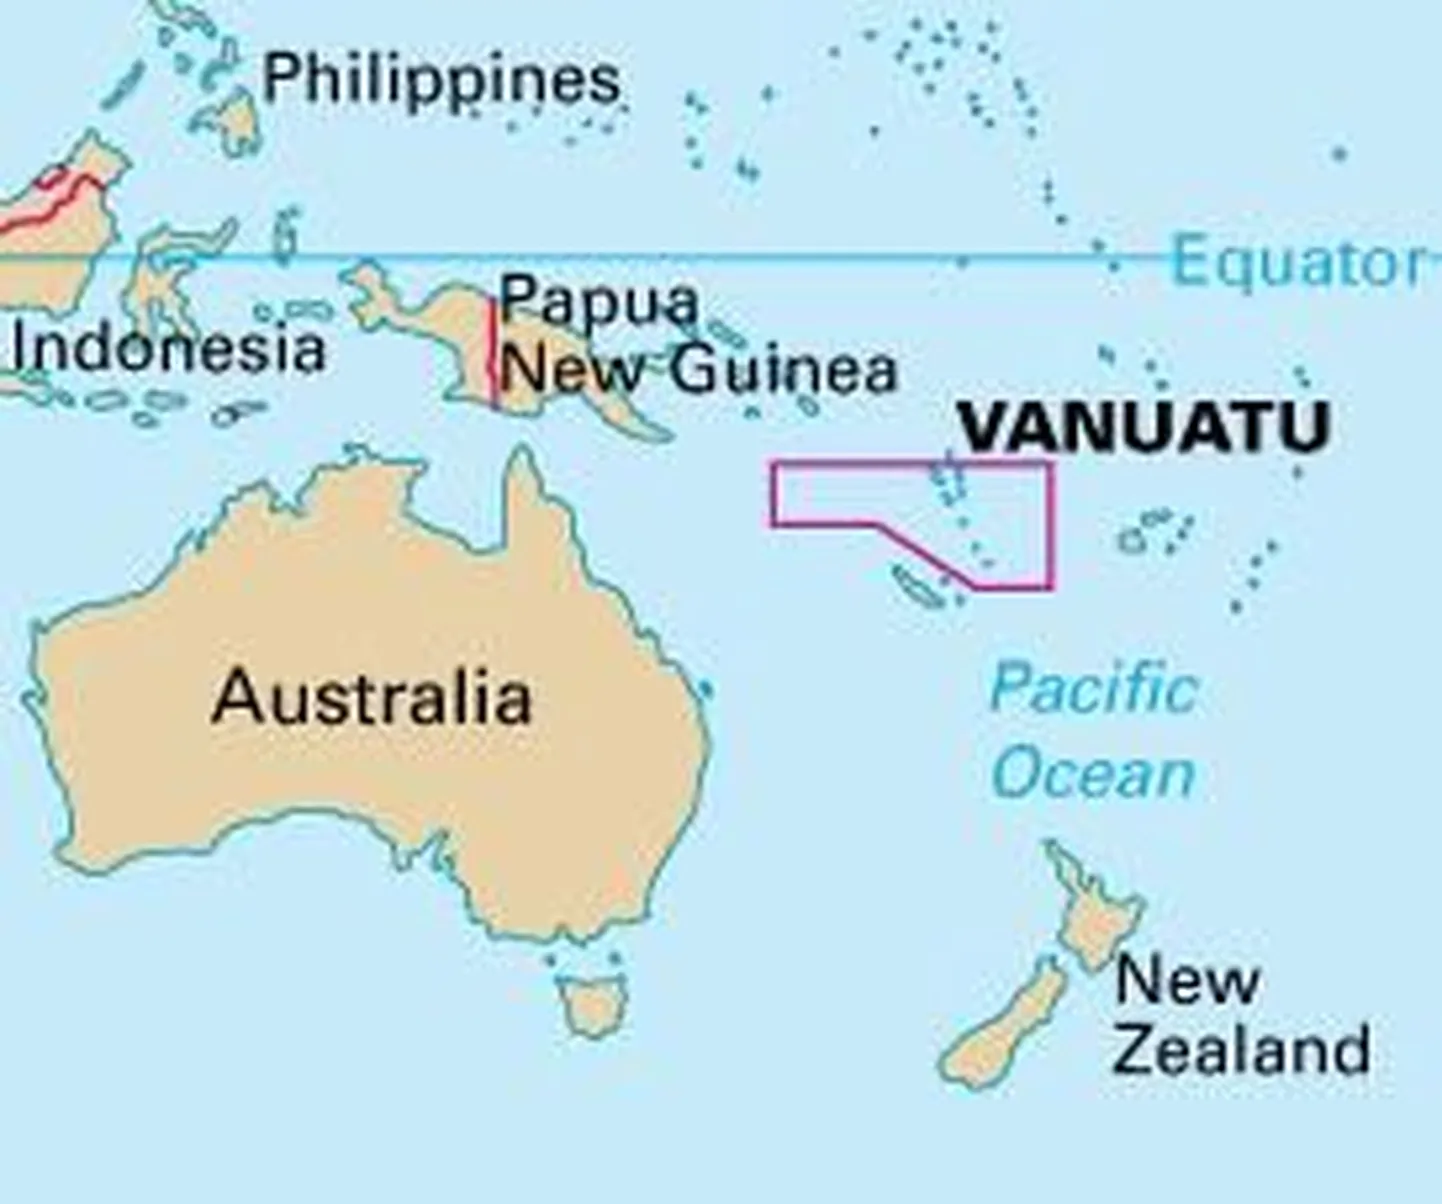 Вануату - островное государство в Тихом океане